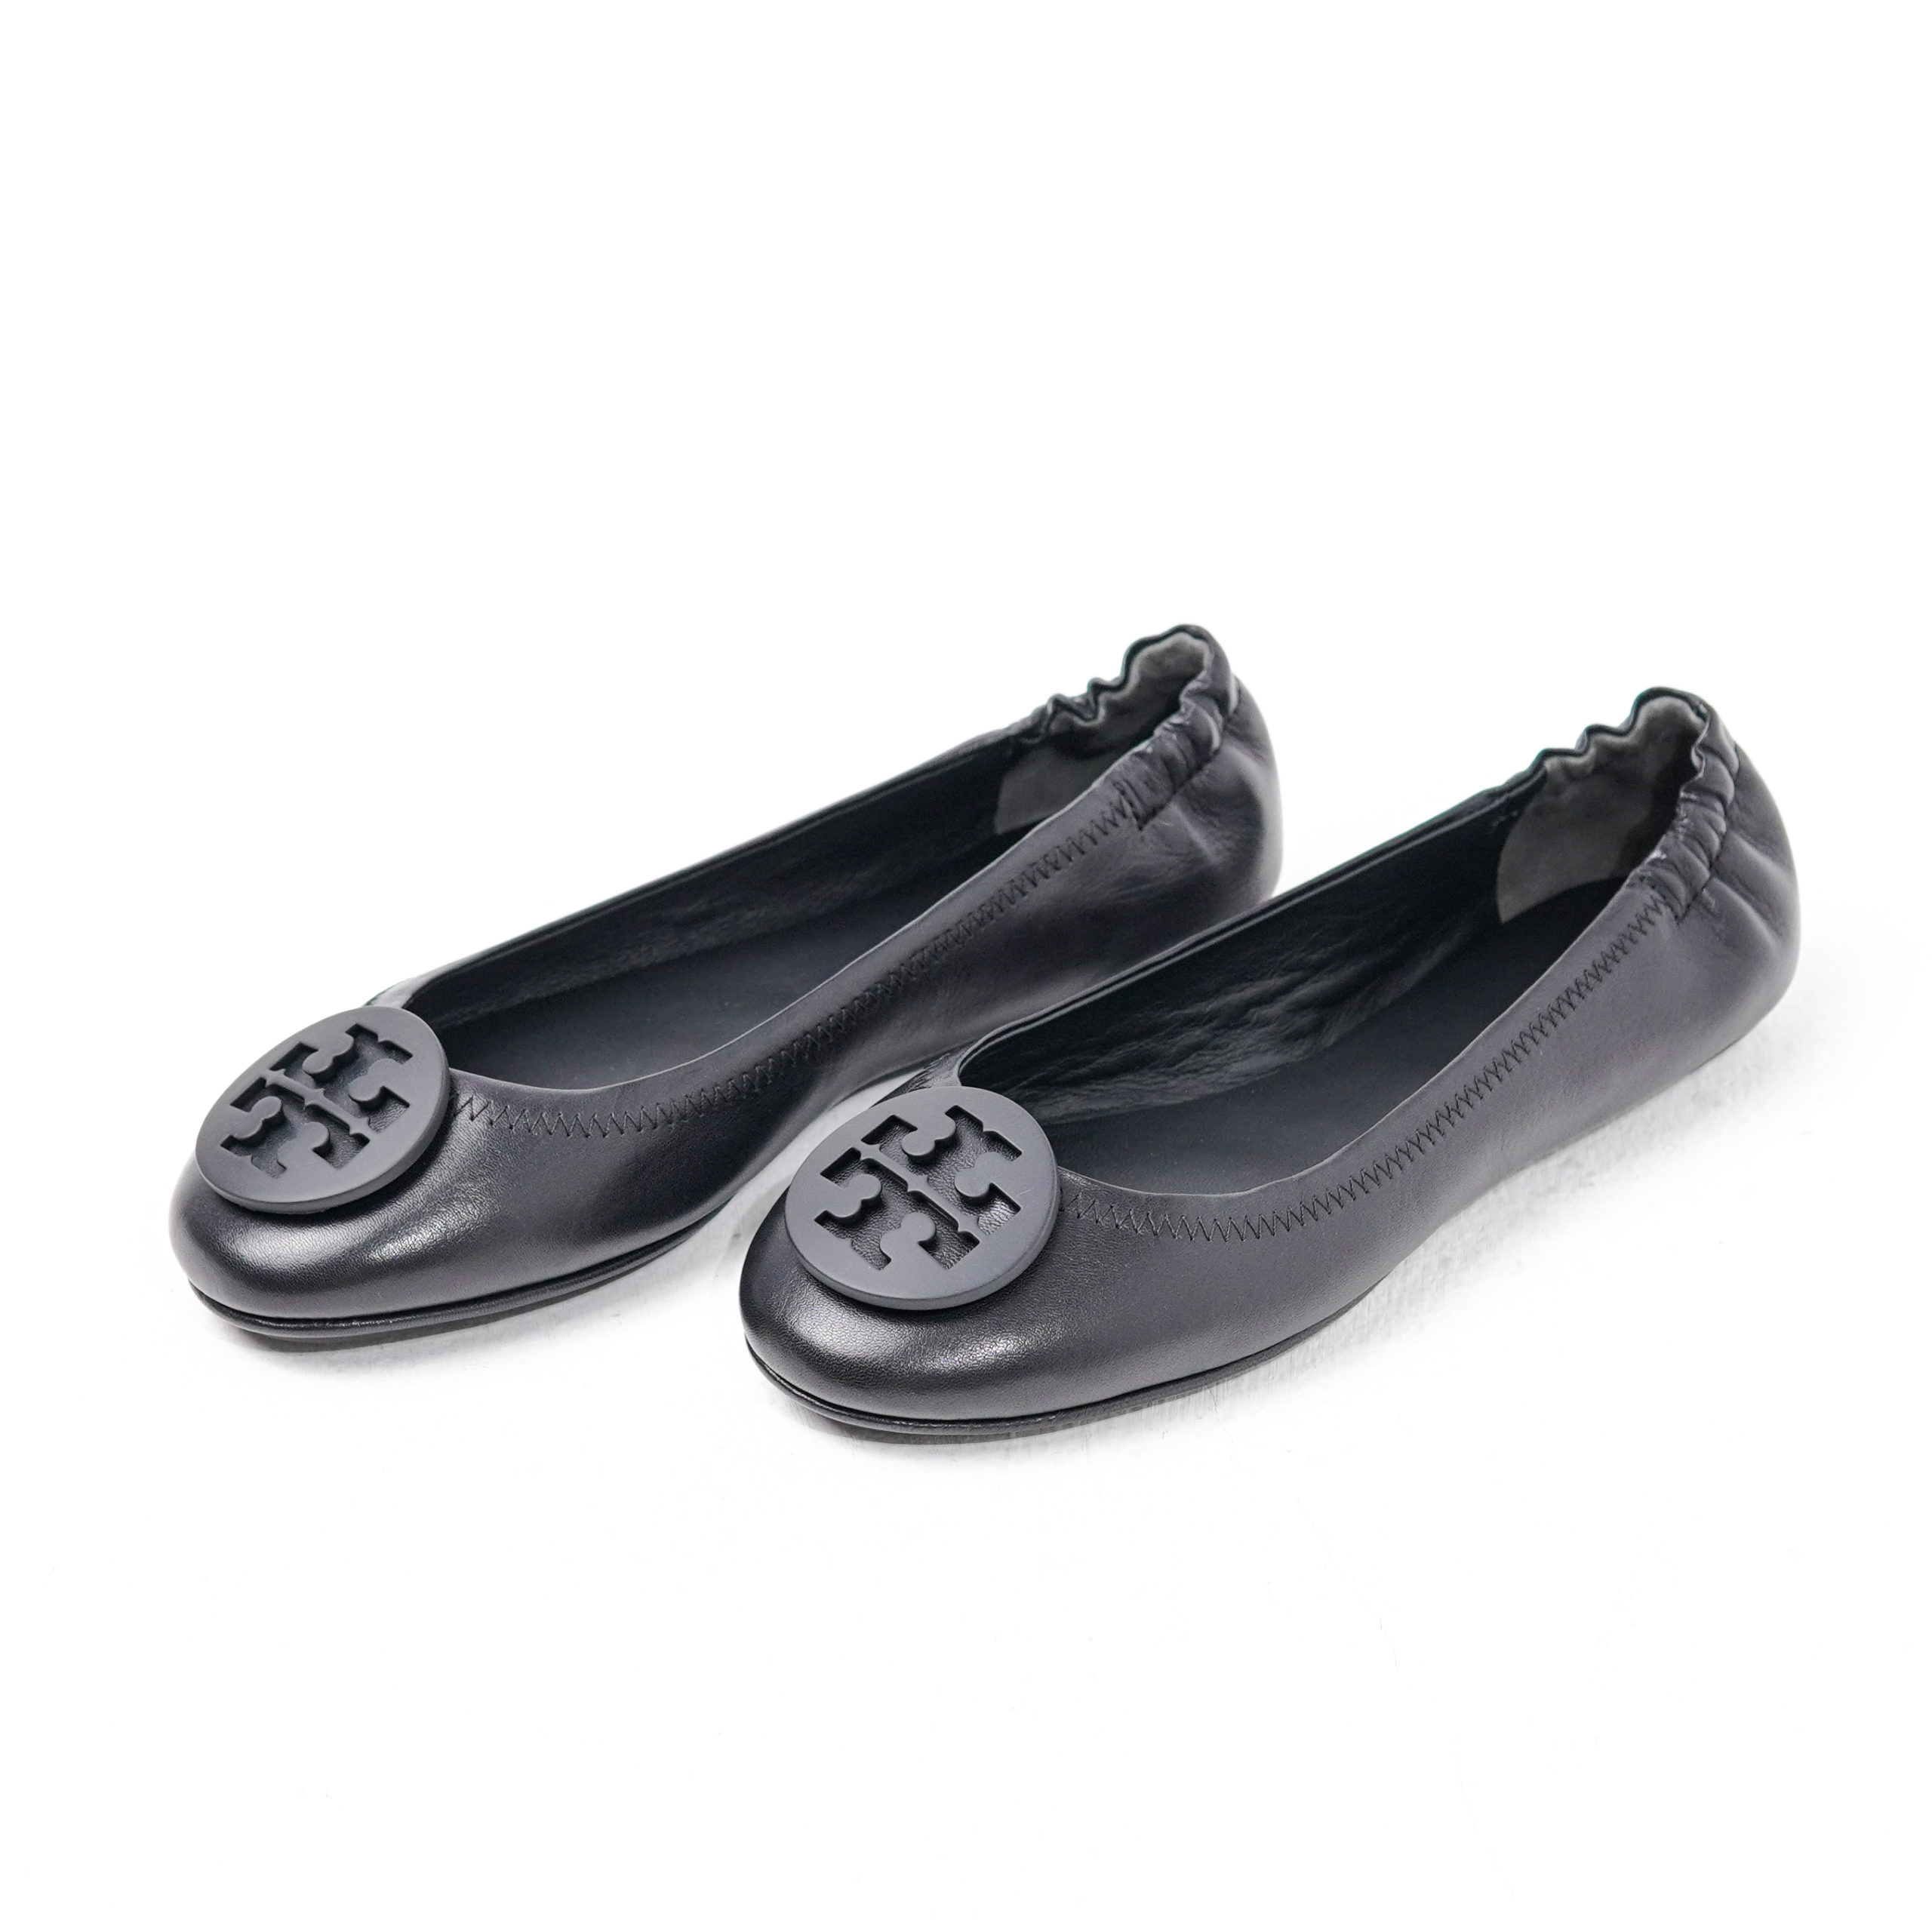 Sepatu TORY BURCH MINNIE BALLERINA BLACK 100% ORIGINAL 